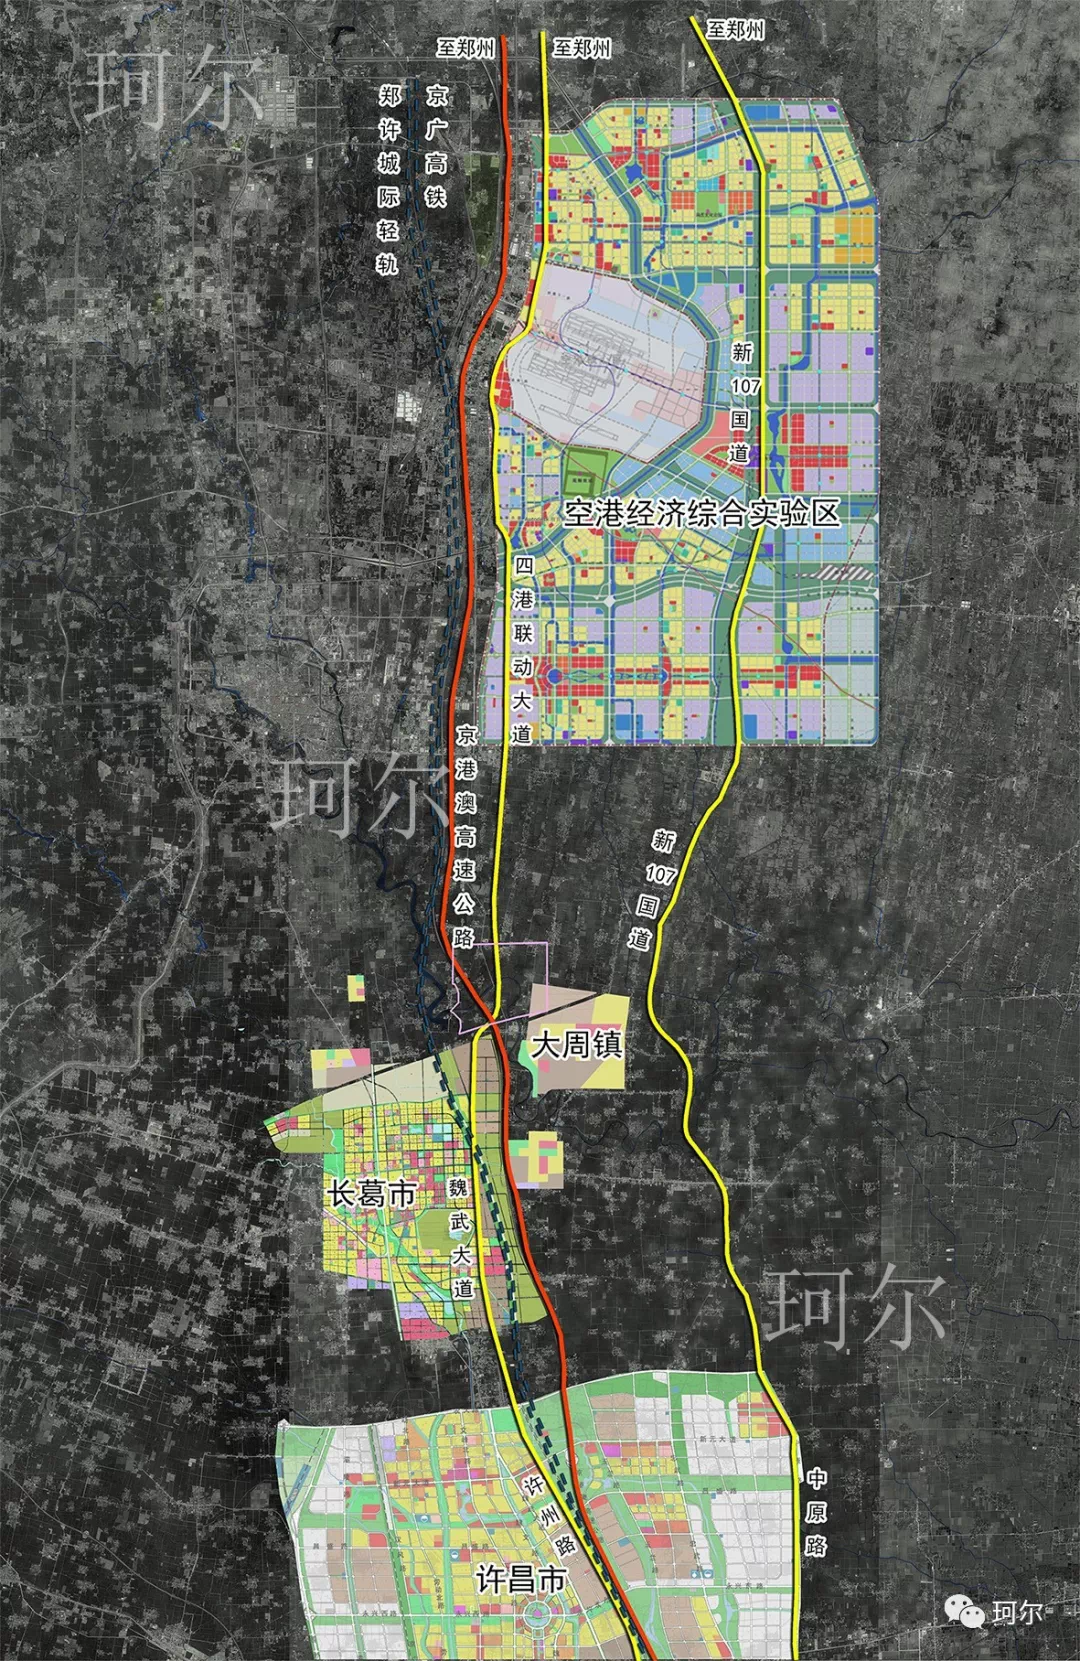 定陶区2035年规划图图片